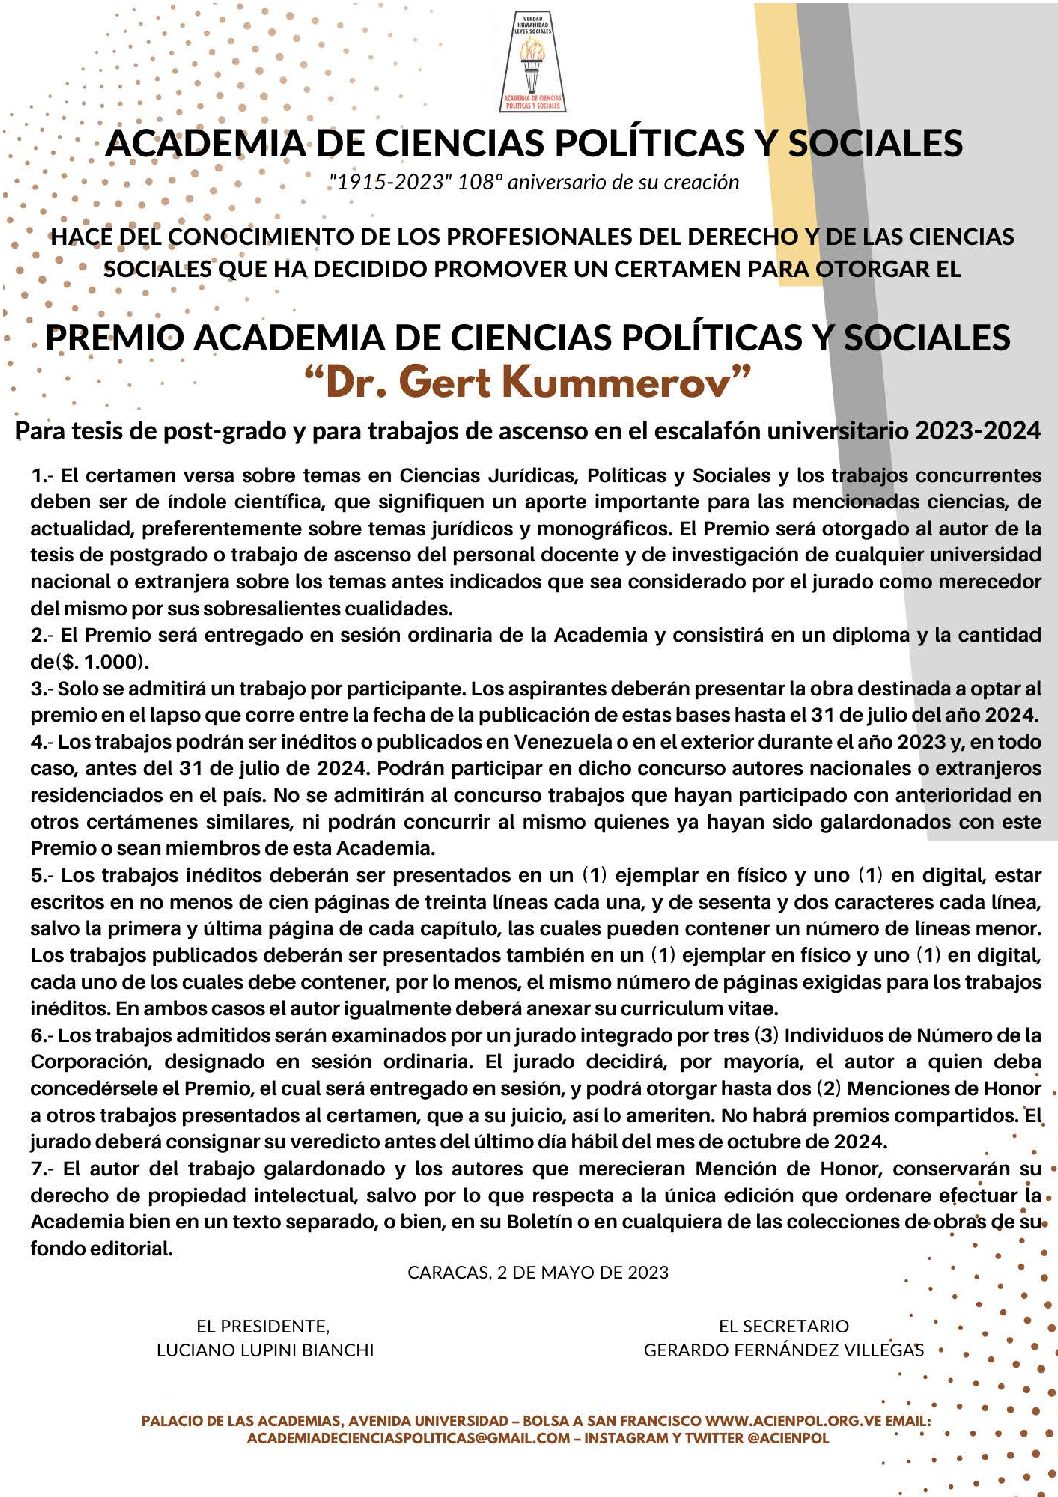 Bases Premio Academia de Ciencias Políticas y Sociales “Dr. Gert Kummerov” para tesis de post-grado y para trabajos de ascenso en el escalafón universitario 2023-2024